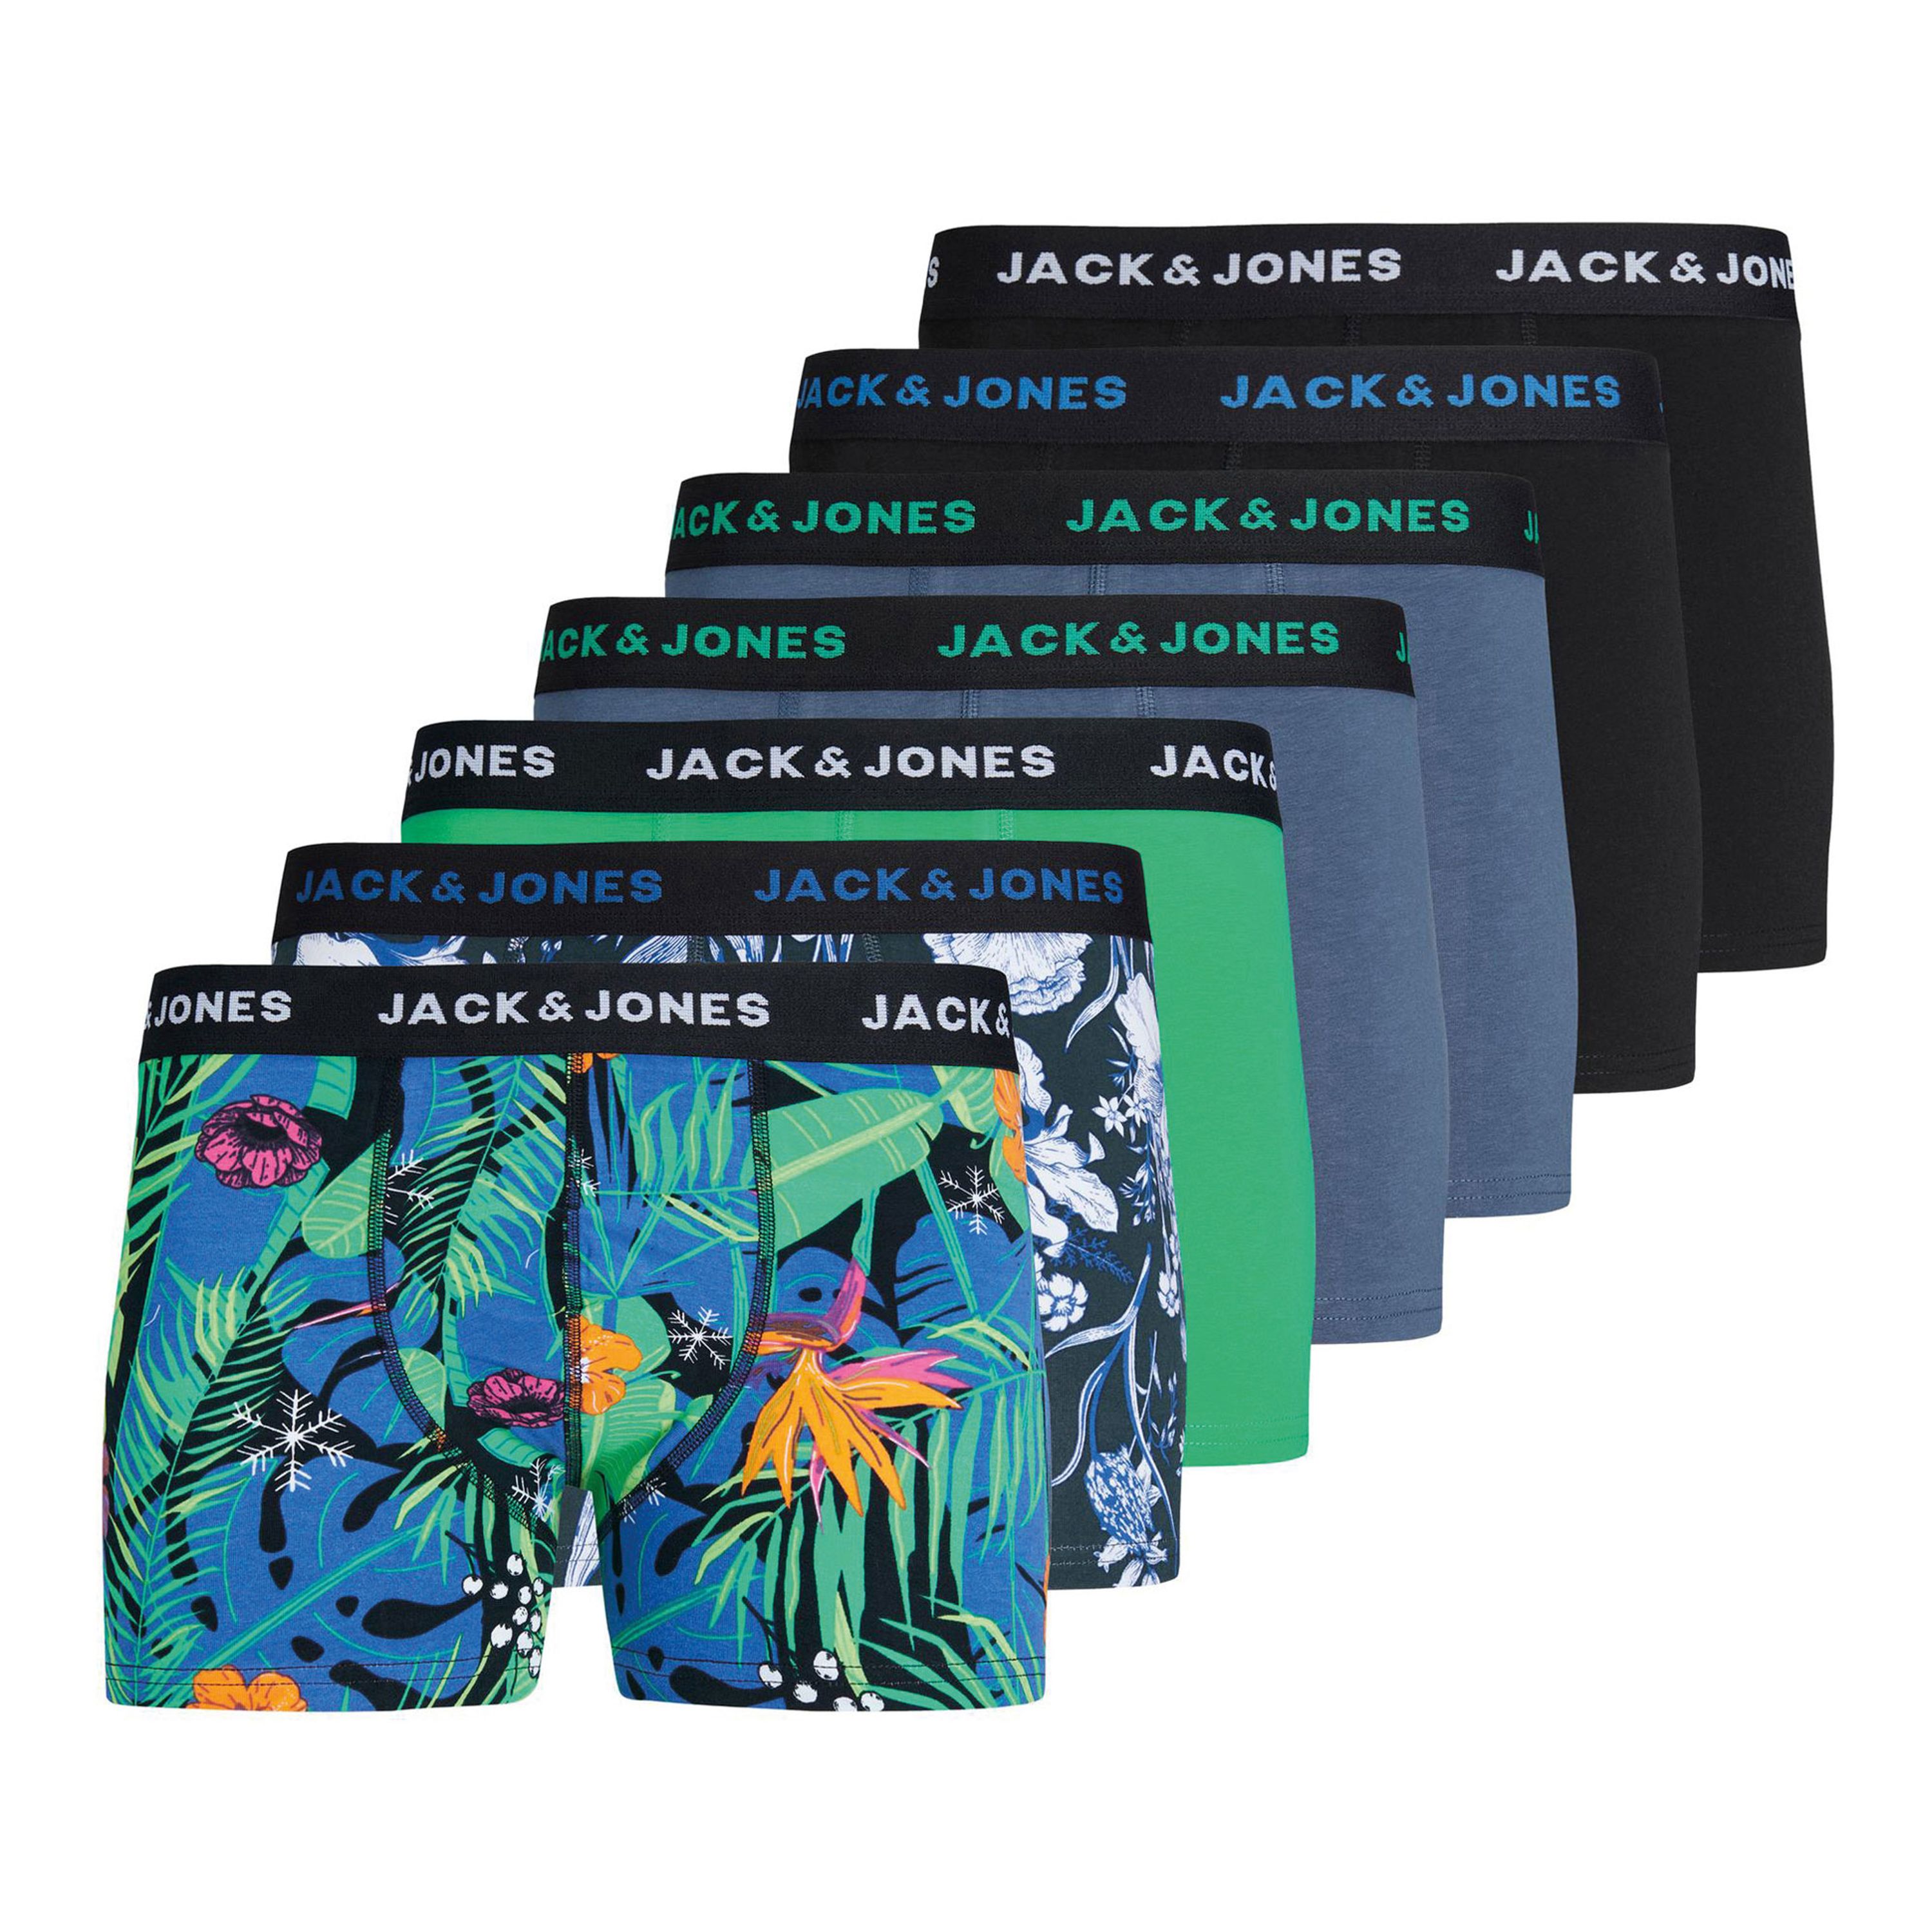 Jack & jones Boxershort met labelprint in een set van 7 stuks